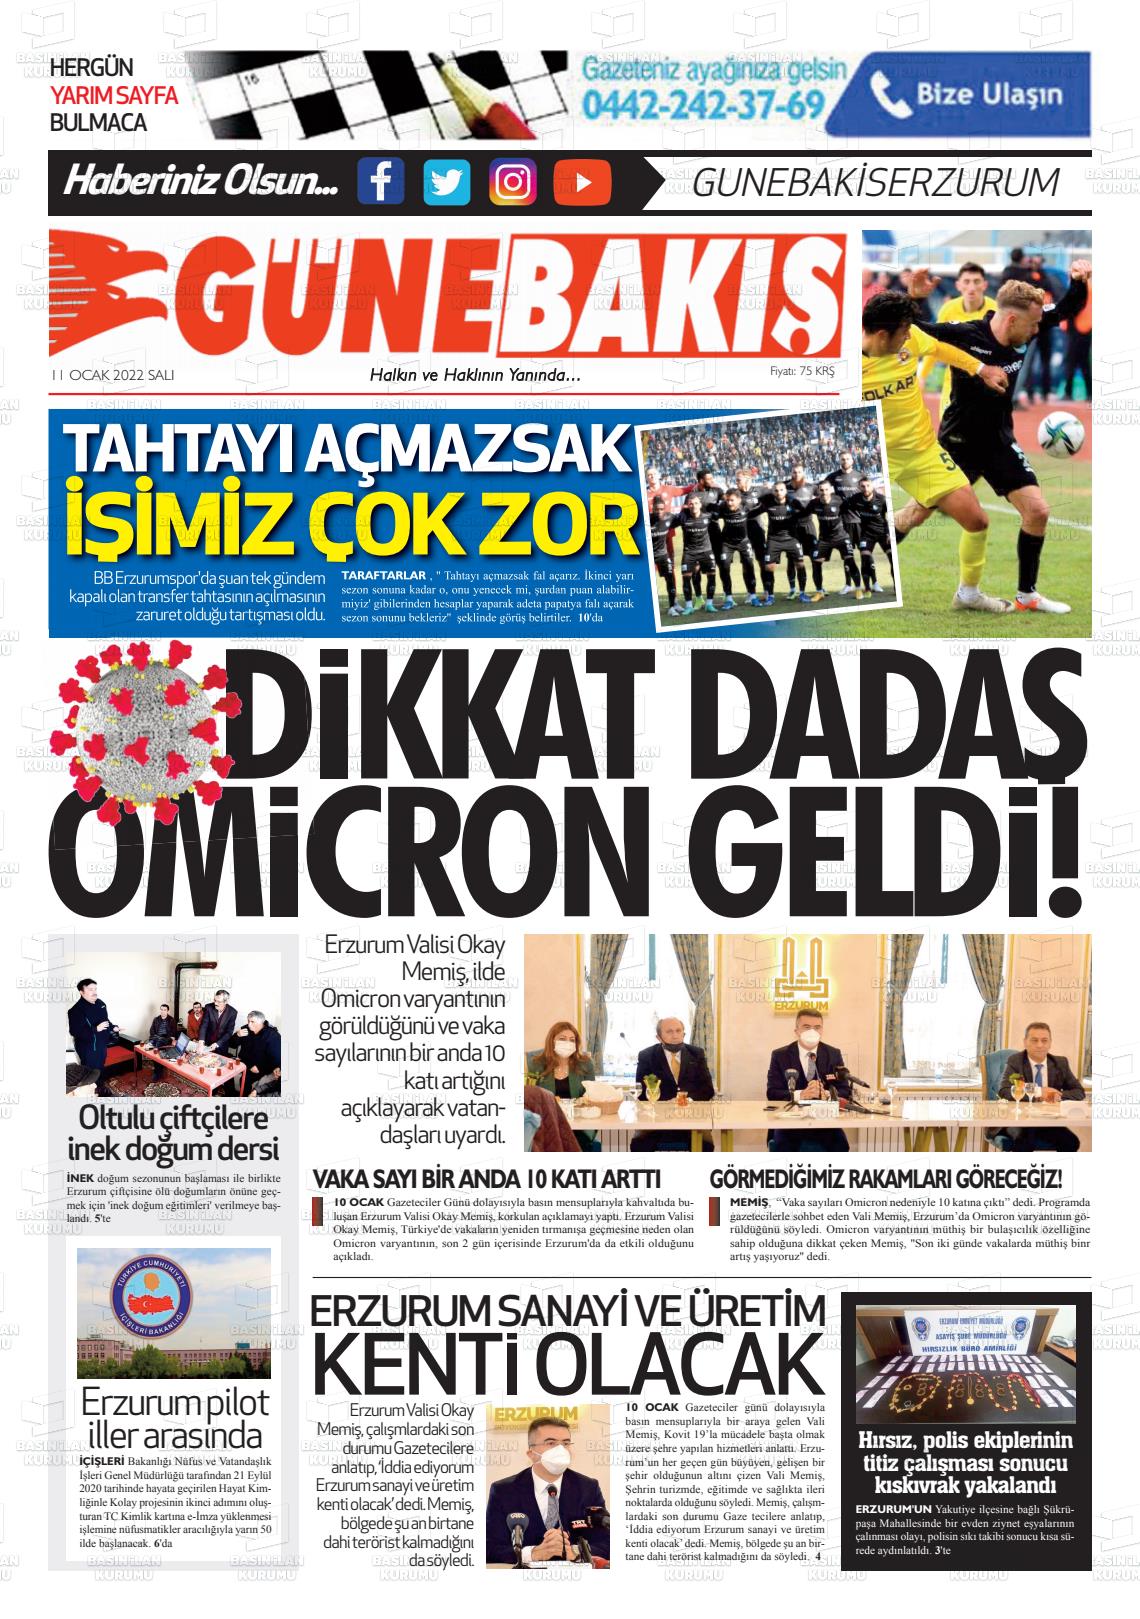 11 Ocak 2022 Erzurum Günebakış Gazete Manşeti